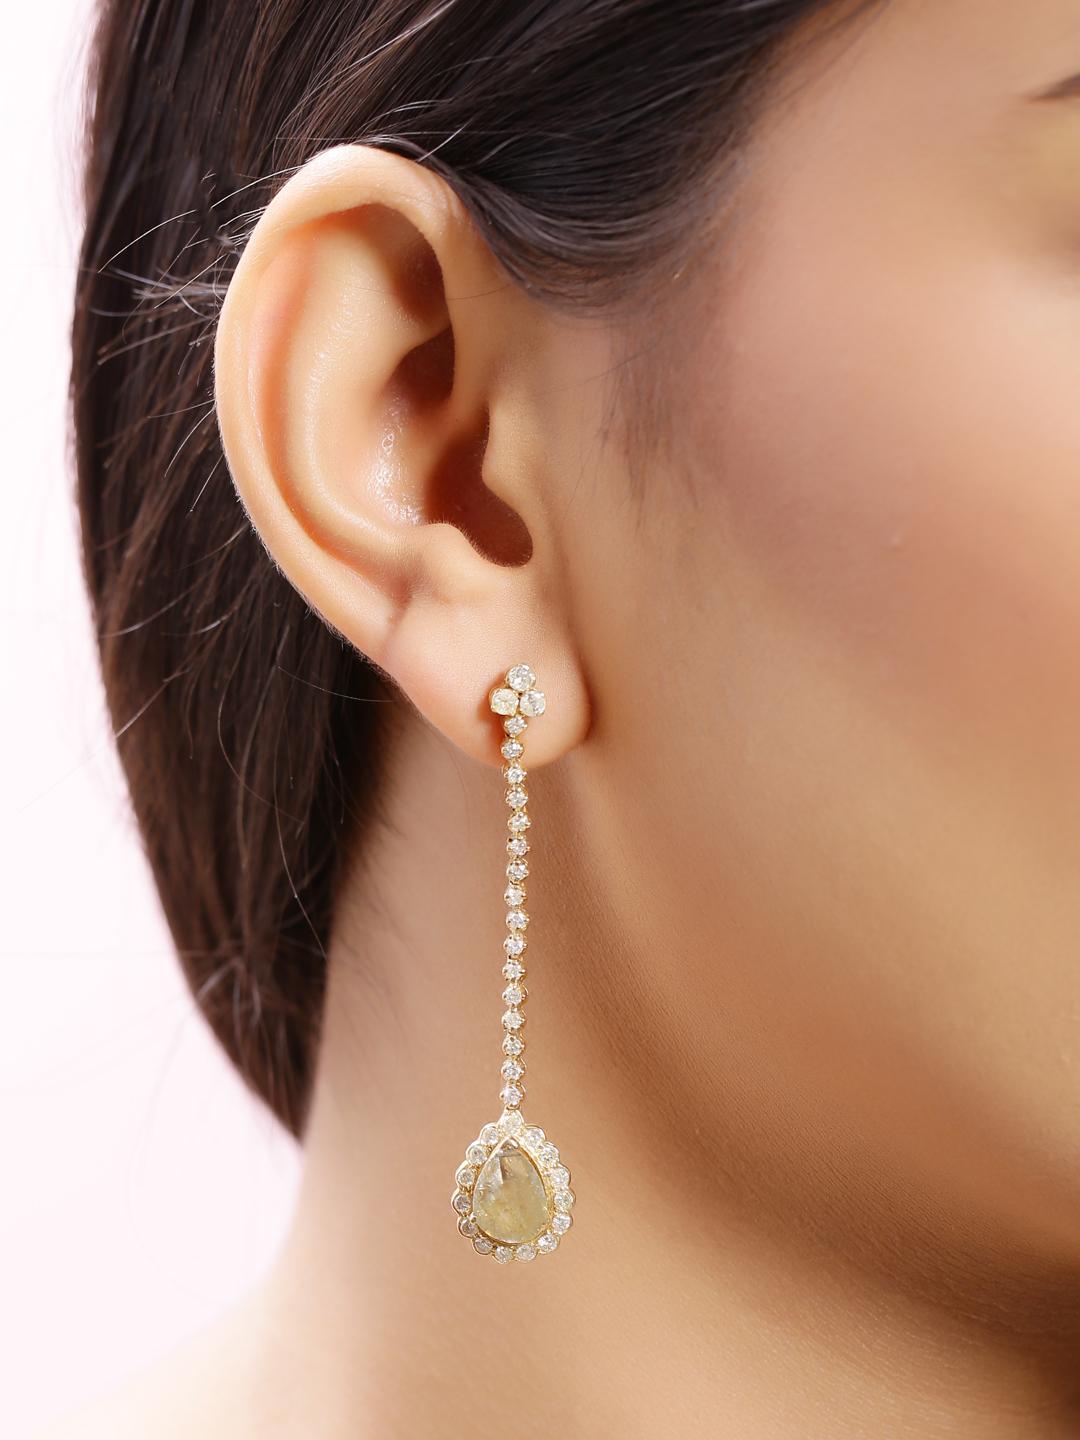 Modern Dangling Diamond Pear Shape Earring Set in 18 Karat Yellow Gold For Sale